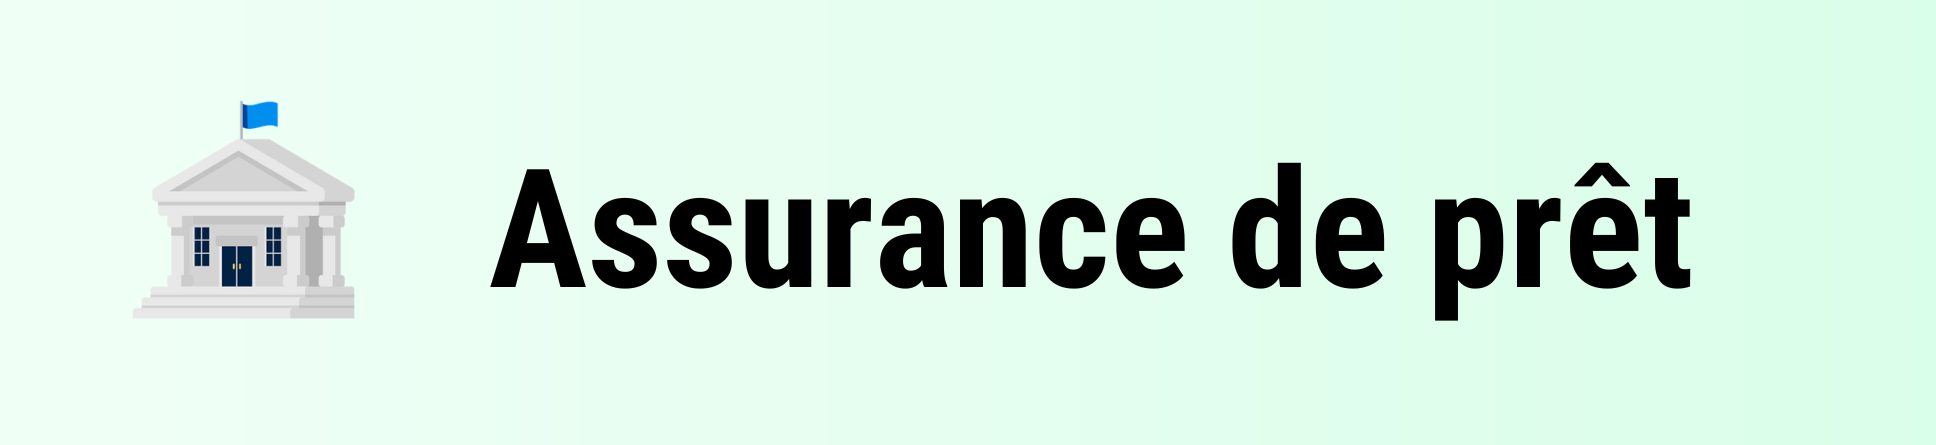 Assurance de prêt